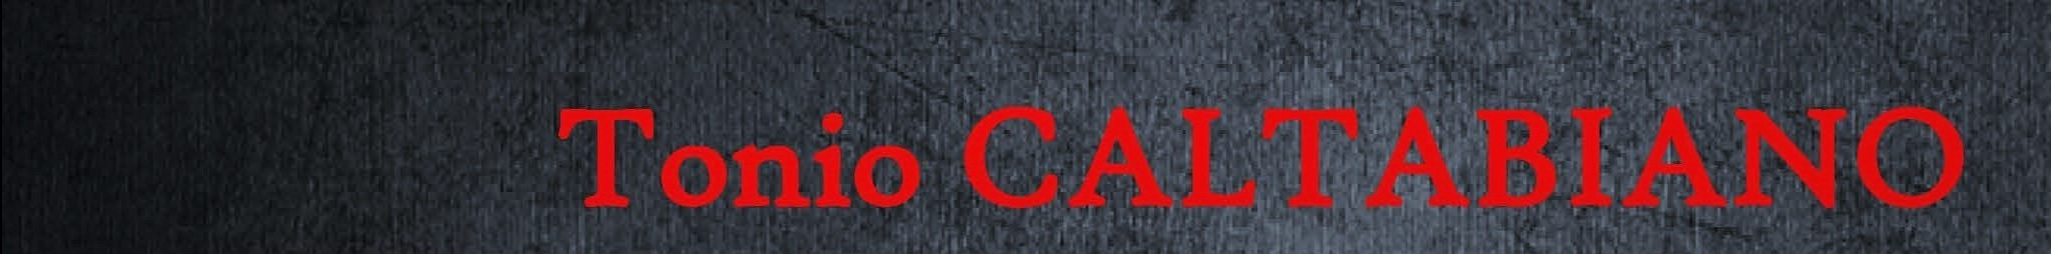 Tonio CALTABIANO's profile banner